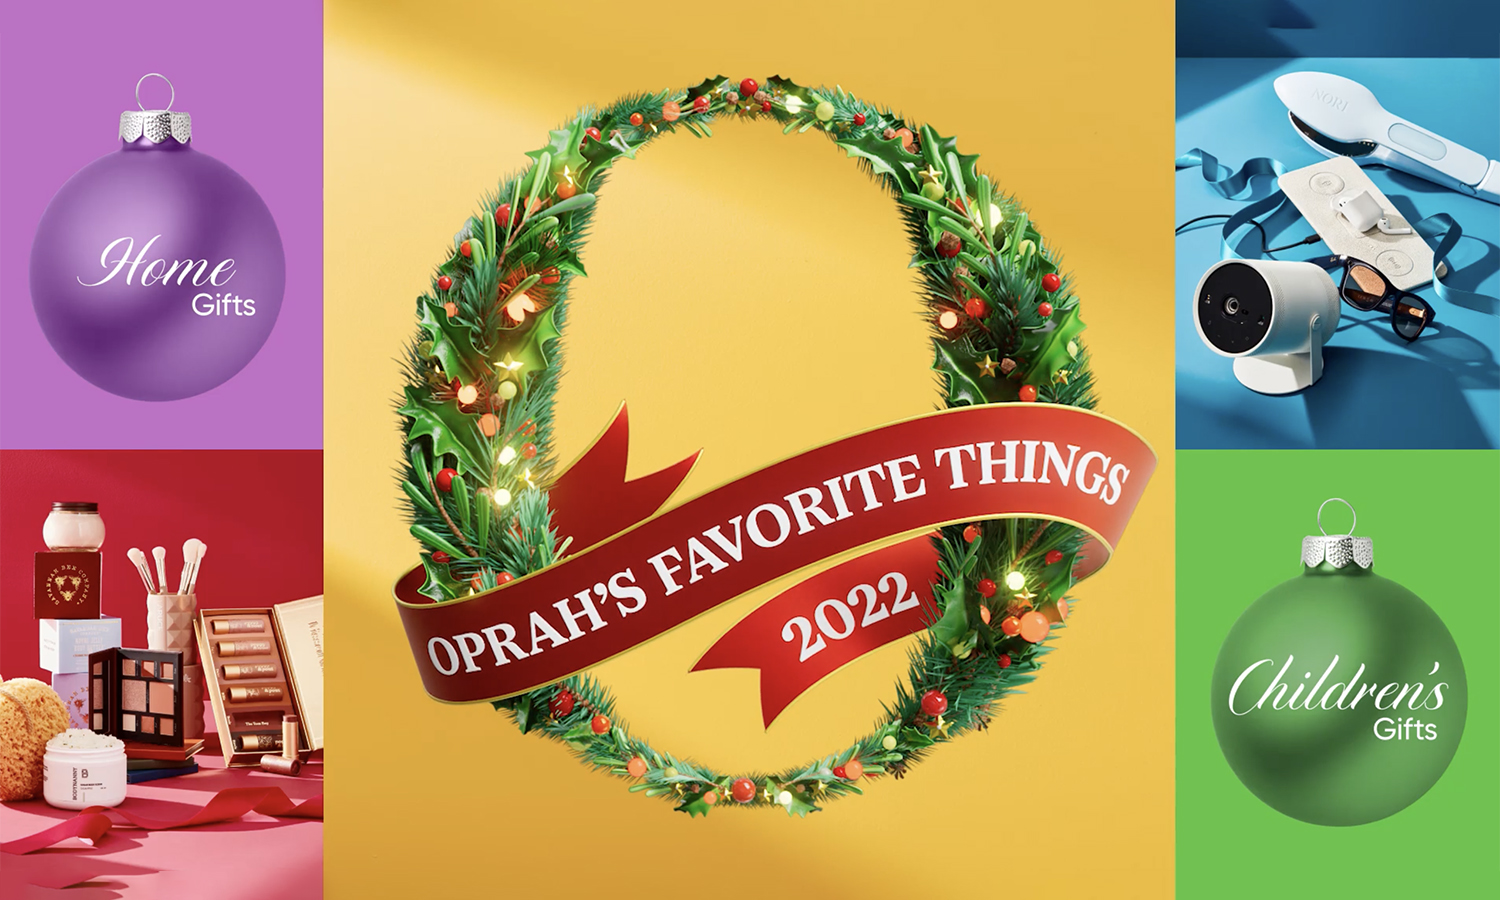 Alums on Oprah's “Favorite Things” List